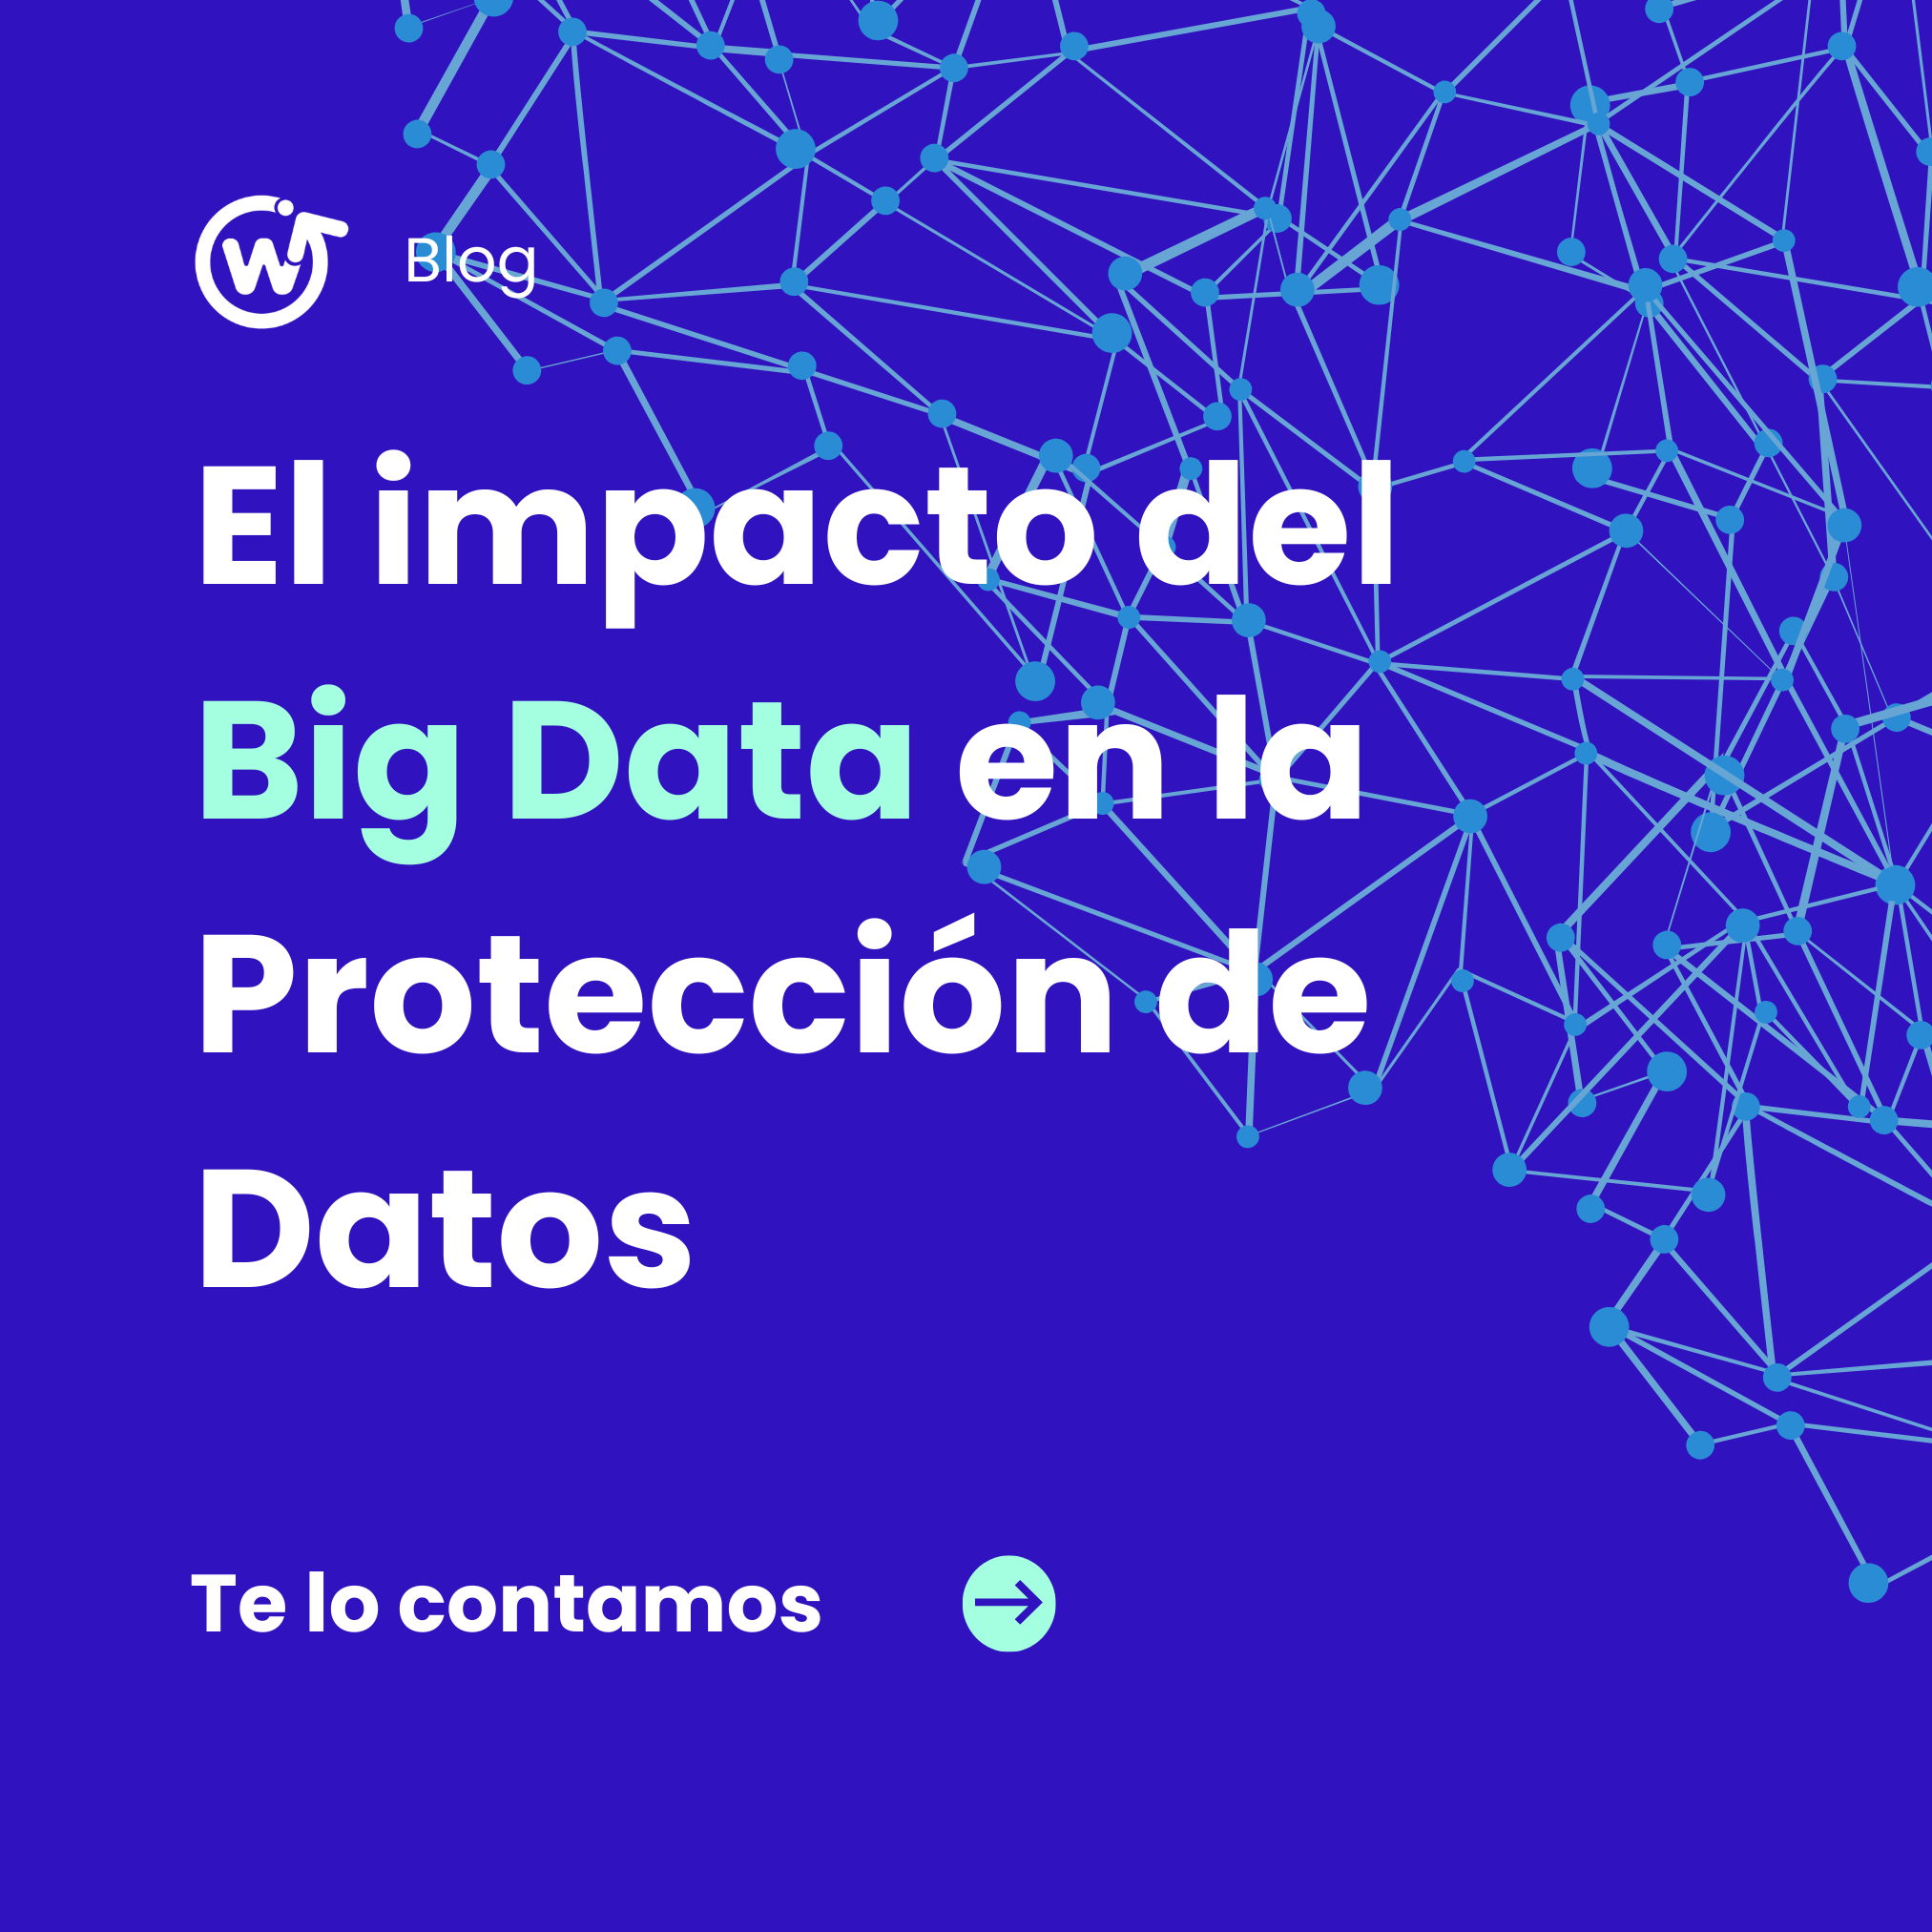 El impacto del Big Data en la Protección de Datos